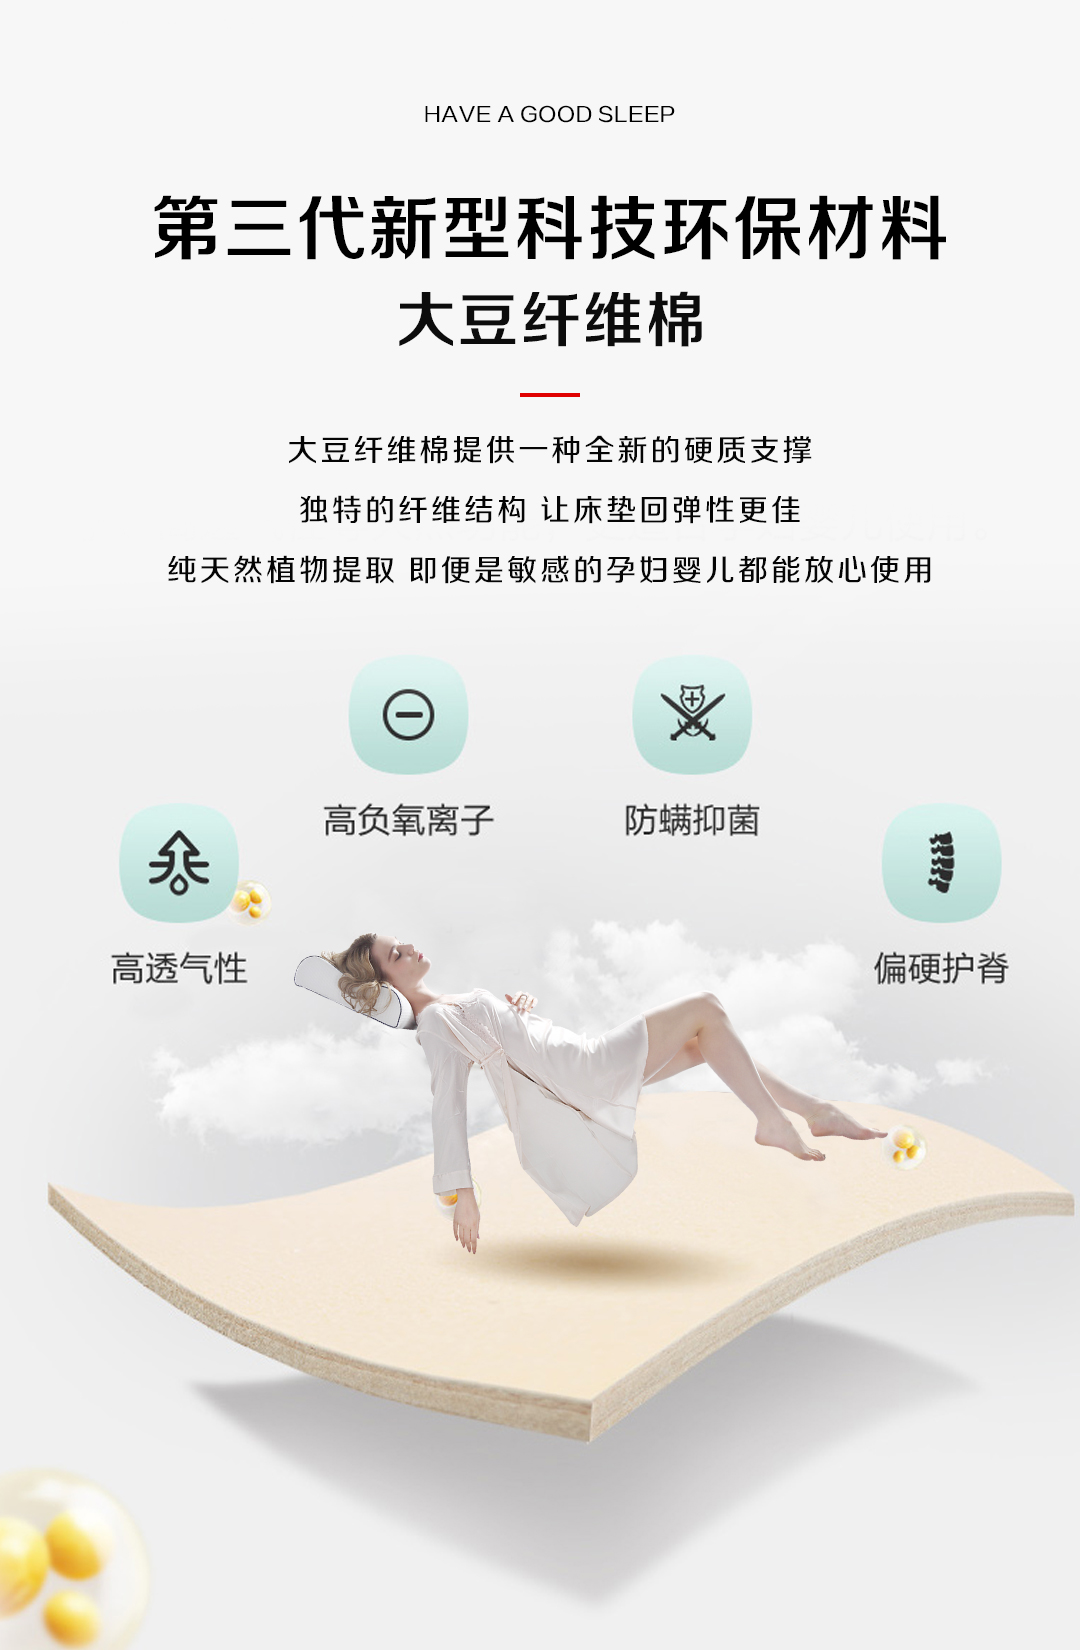 新品上市|夏&梦床垫 360°全面抗菌 护脊新主张 从芯定义